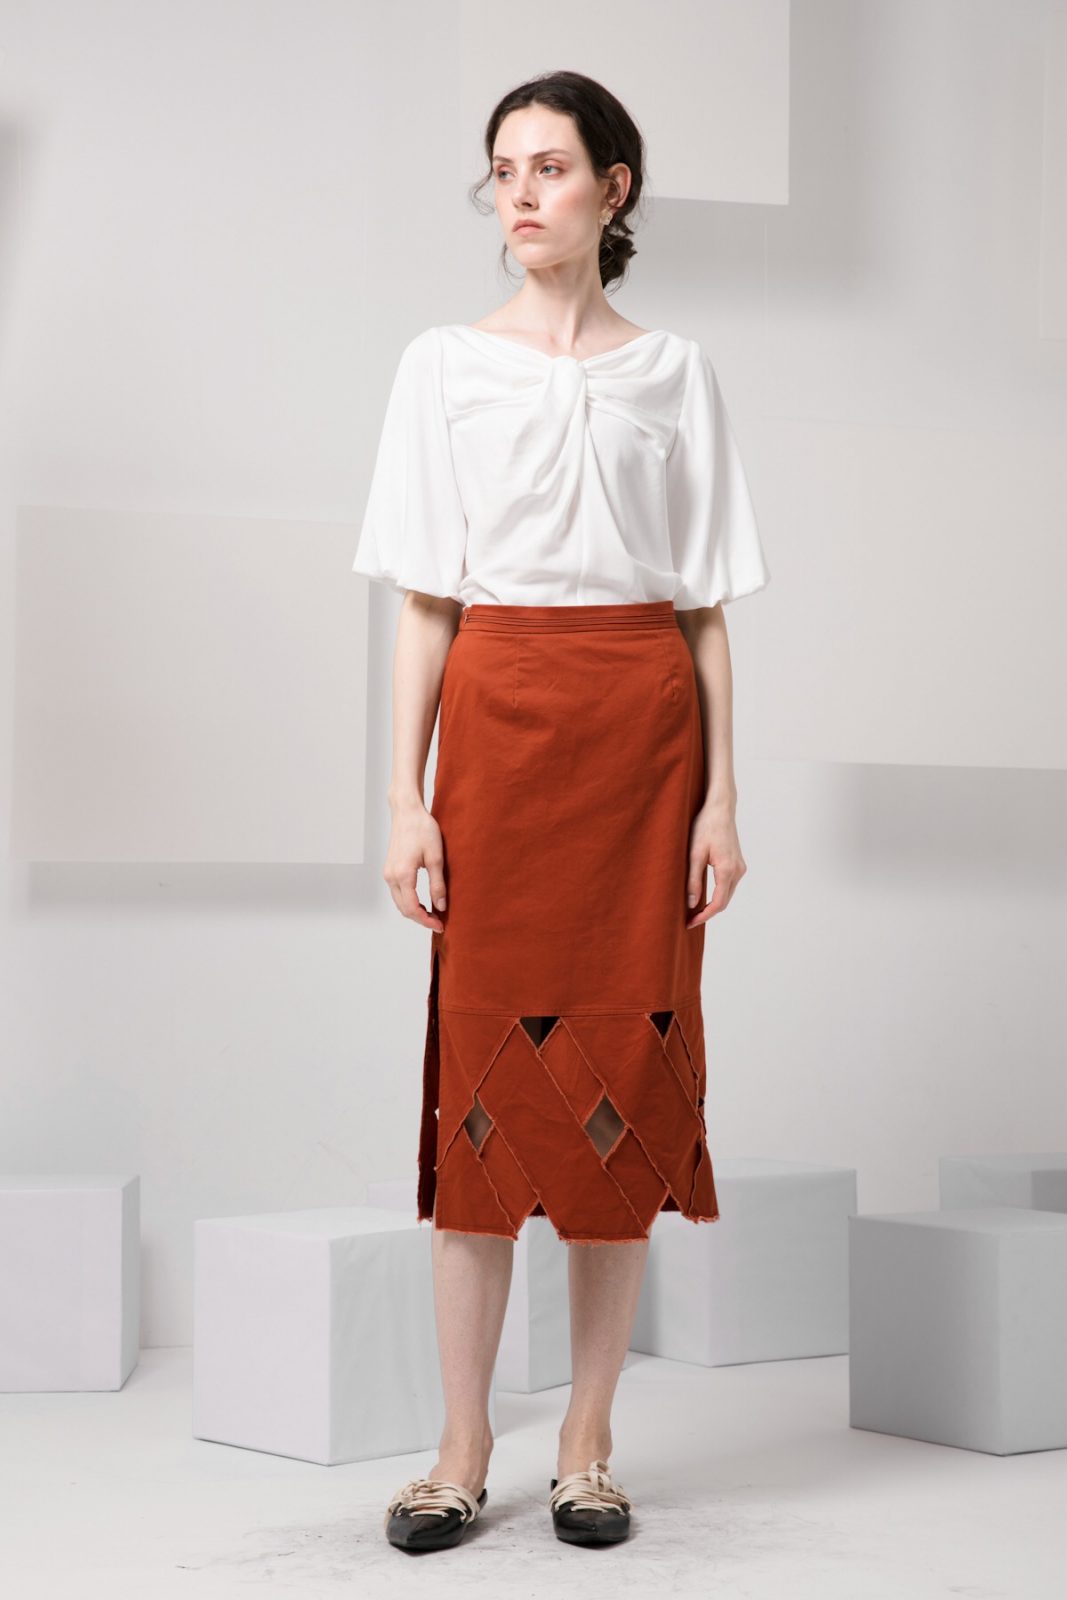 SKYE minimalist women clothing fashion Kai Knot Top white